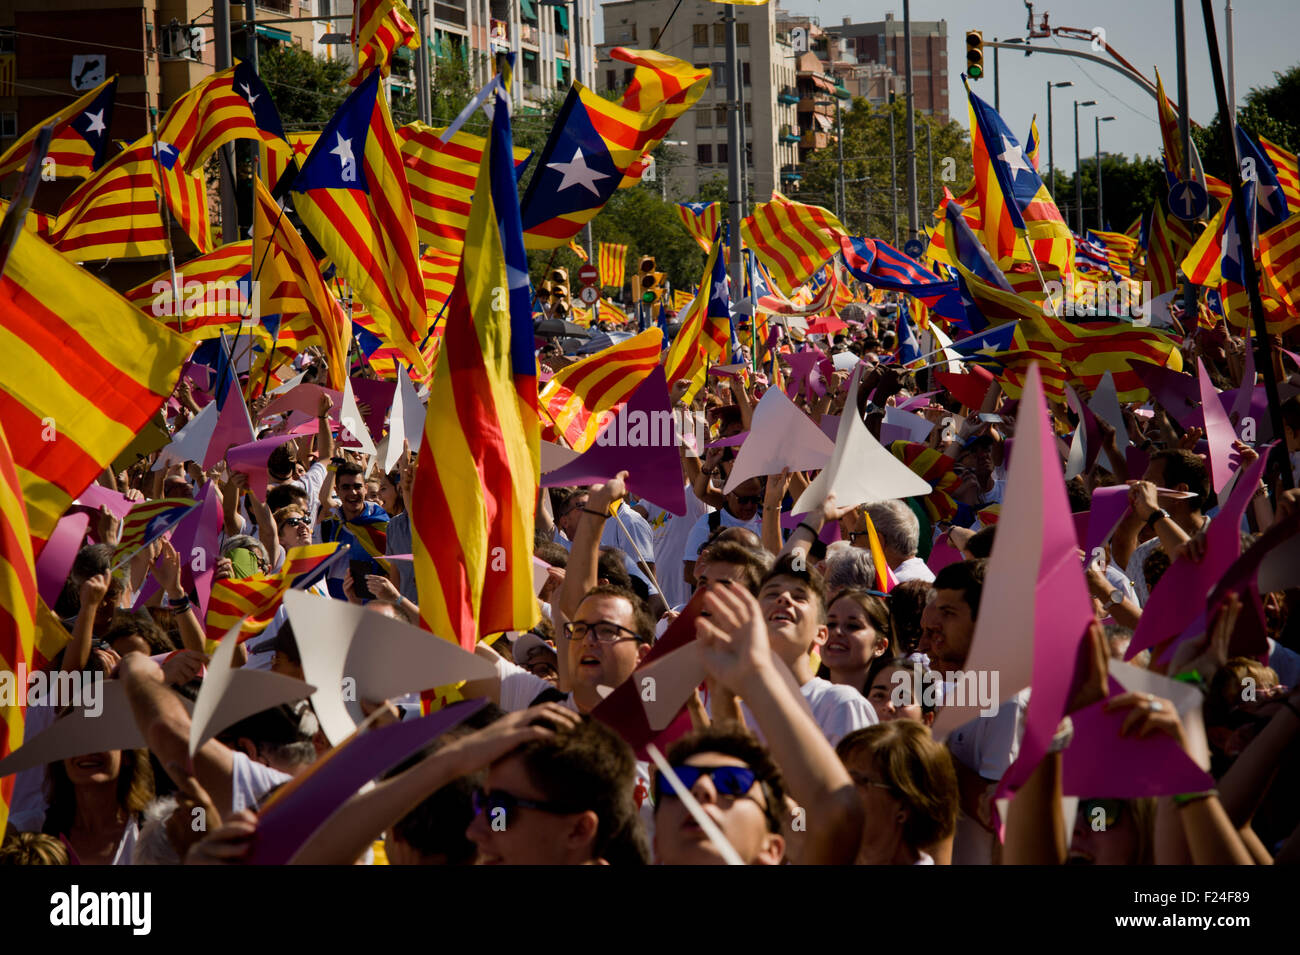 Barcelone, Catalogne, Espagne. Sep 11, 2015. Des milliers de personnes agitant ''Esteladas'' (drapeau indépendantiste catalan) dans La Meridiana Avenue de Barcelone au cours d'une manifestation de masse appelant à l'indépendance de la Catalogne le 11 septembre, 2015. Journée nationale de la Catalogne (La Diada) 2015 marque le début de la campagne pour les élections régionales catalanes prévue pour le 27 septembre. Les derniers sondages donnent une majorité absolue à l'indépendance des parties. © Jordi Boixareu/ZUMA/Alamy Fil Live News Banque D'Images